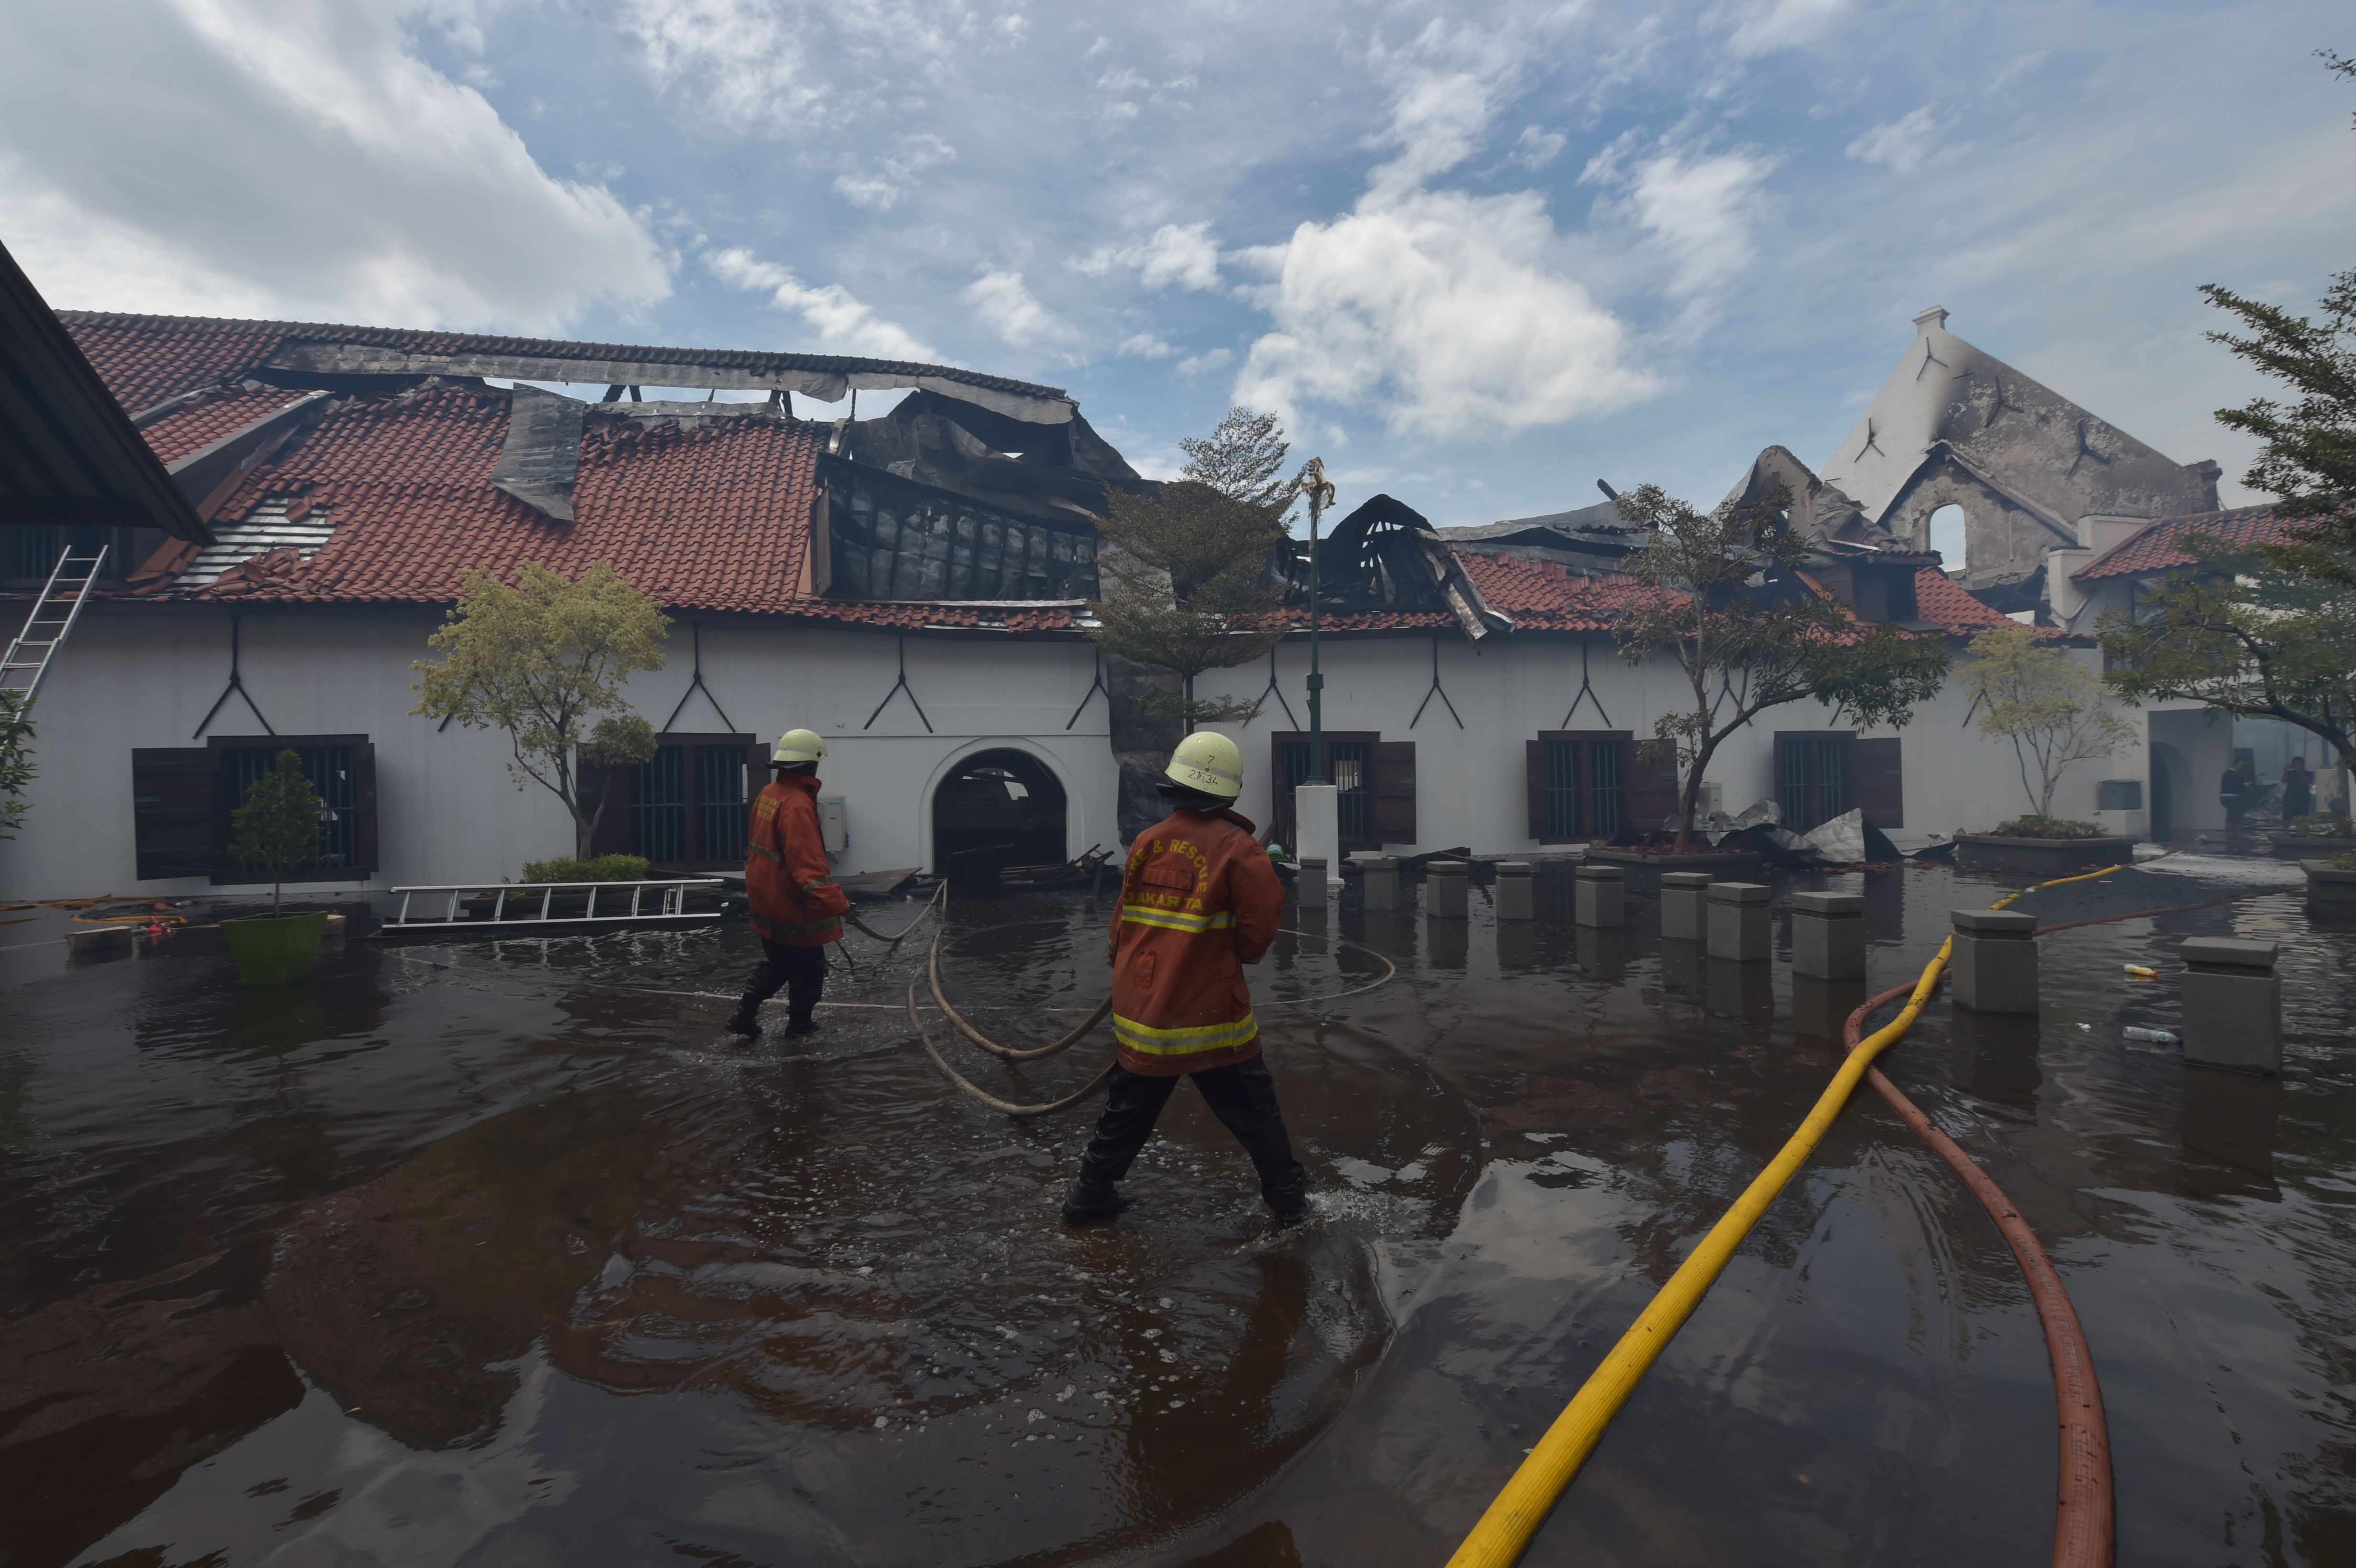 المياه تغمر مبنى أثرى بإندونيسيا أثناء محاولة إطفاء حريق